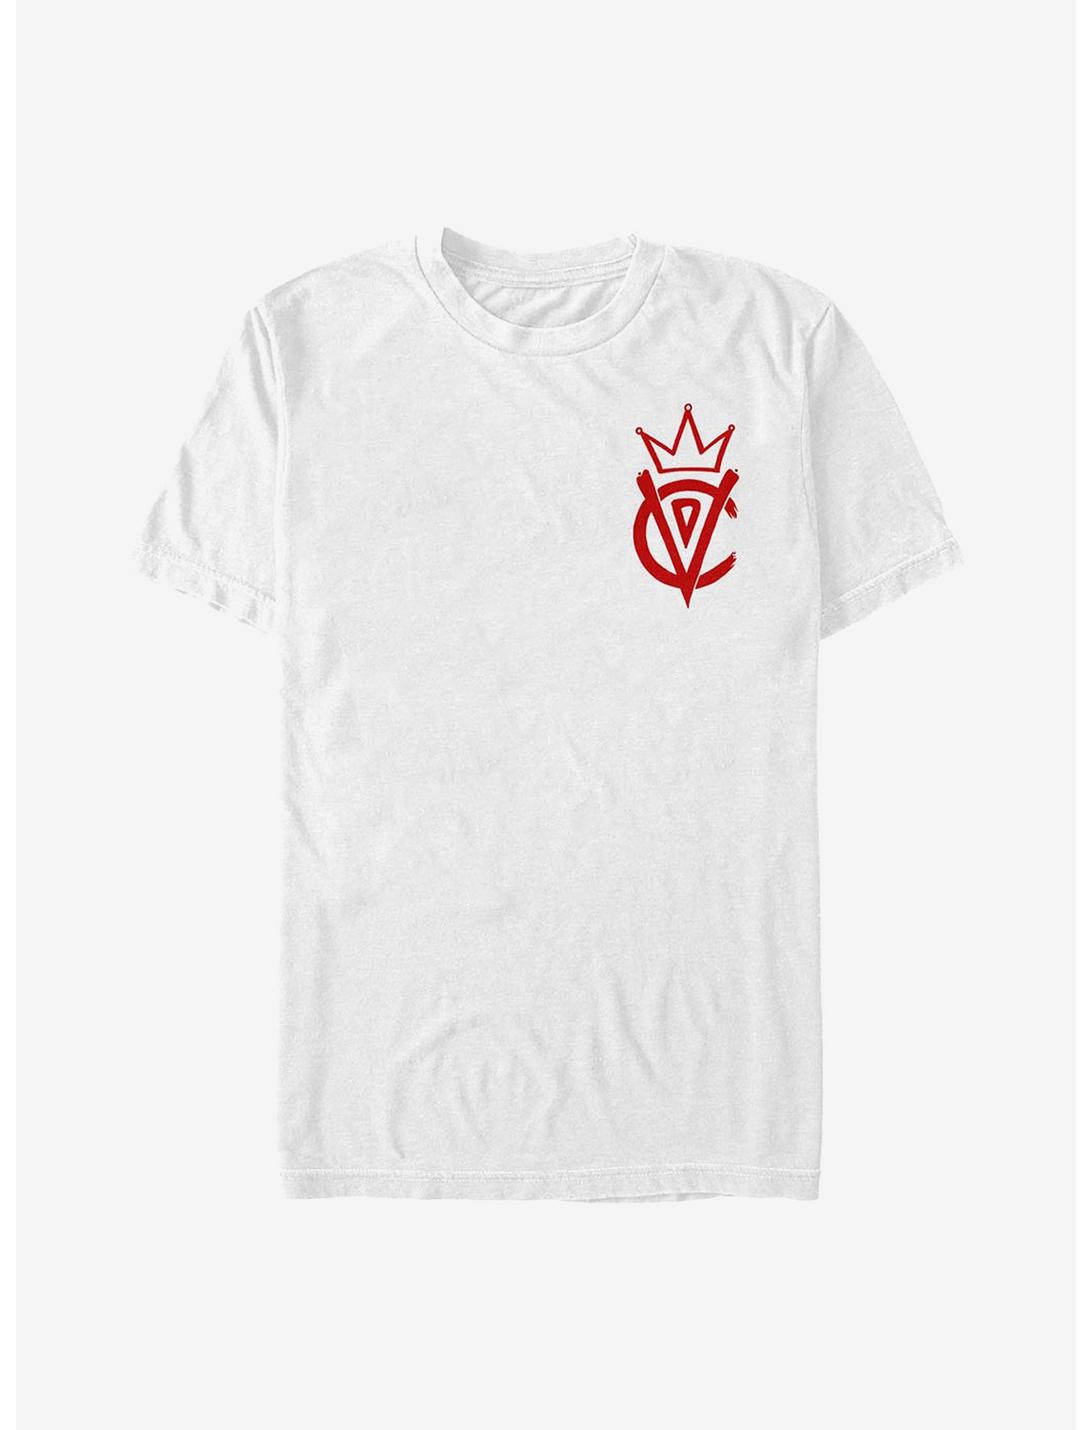 Disney Cruella Emblem T-Shirt, WHITE, hi-res